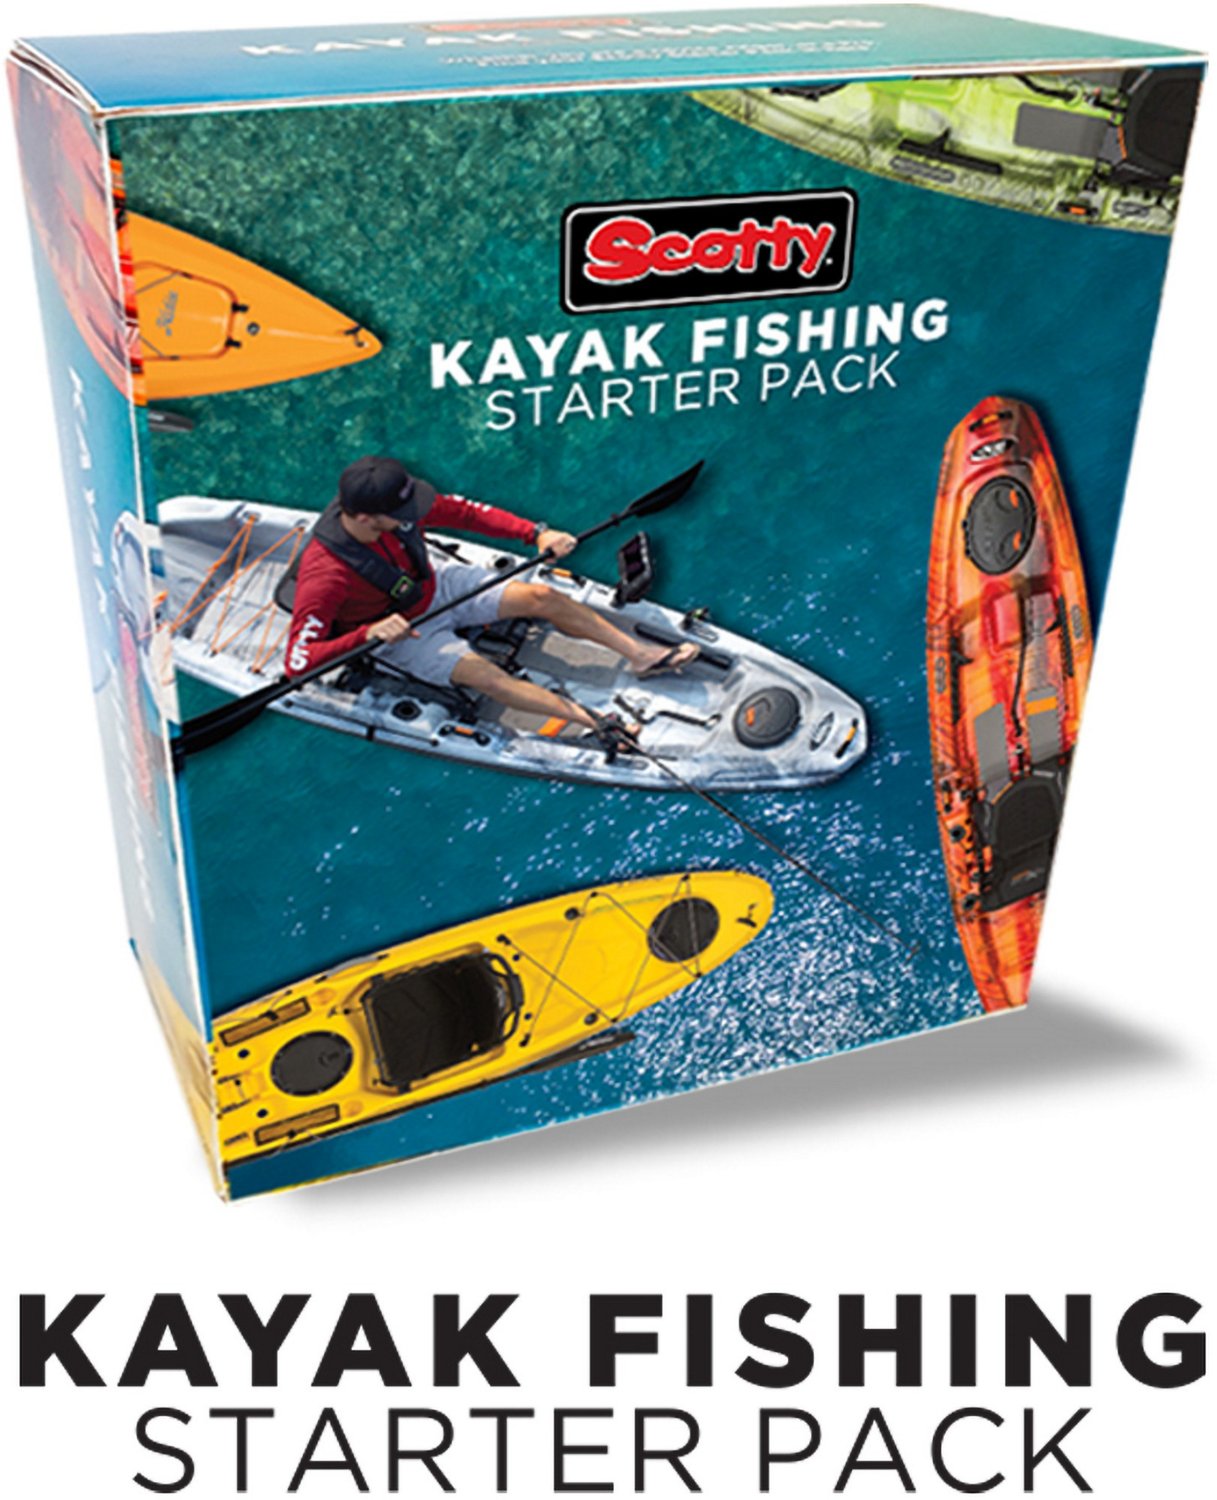 Scotty 0111 Kayak Fishing Starter Kit                                                                                            - view number 1 selected